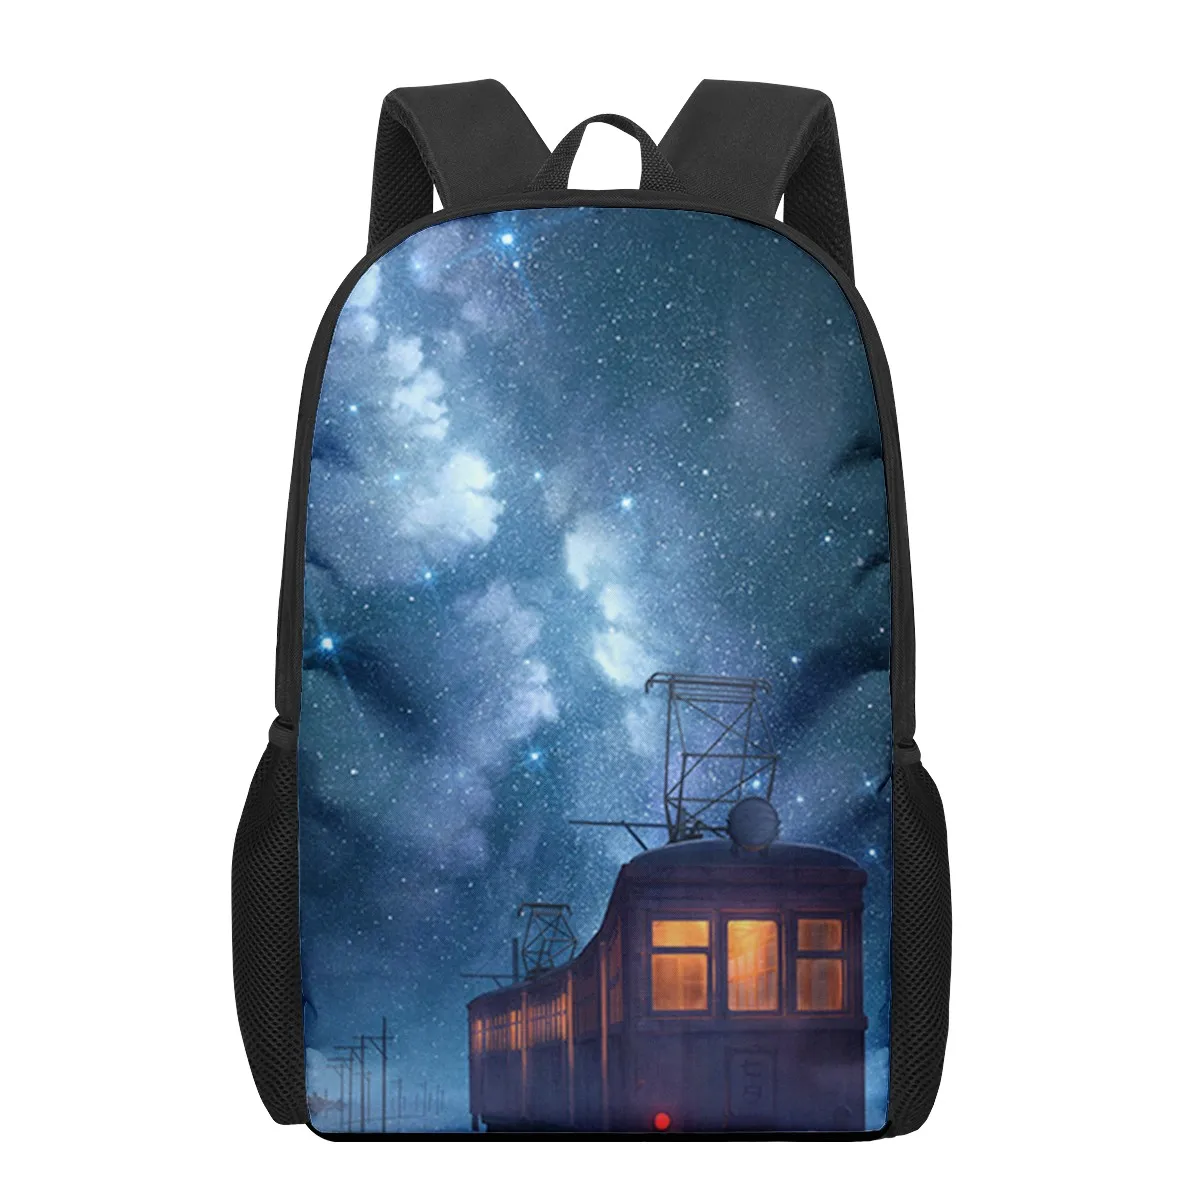 Фото Школьный рюкзак для детей ранцы с 3D рисунком звездного неба заднего вида